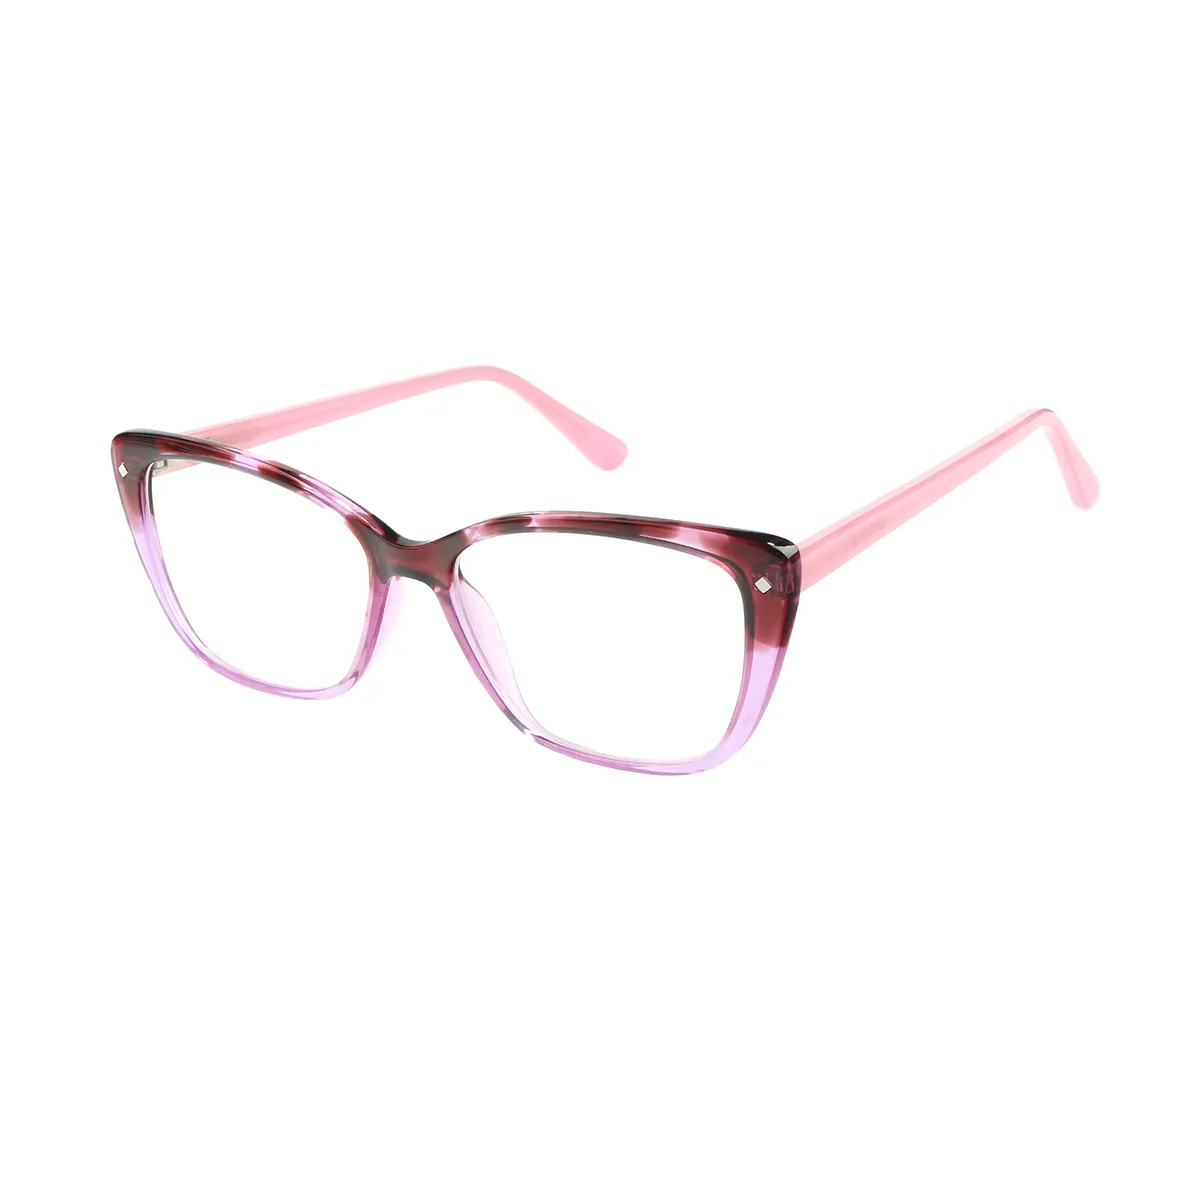 Fashion Square Brown Eyeglasses for Women